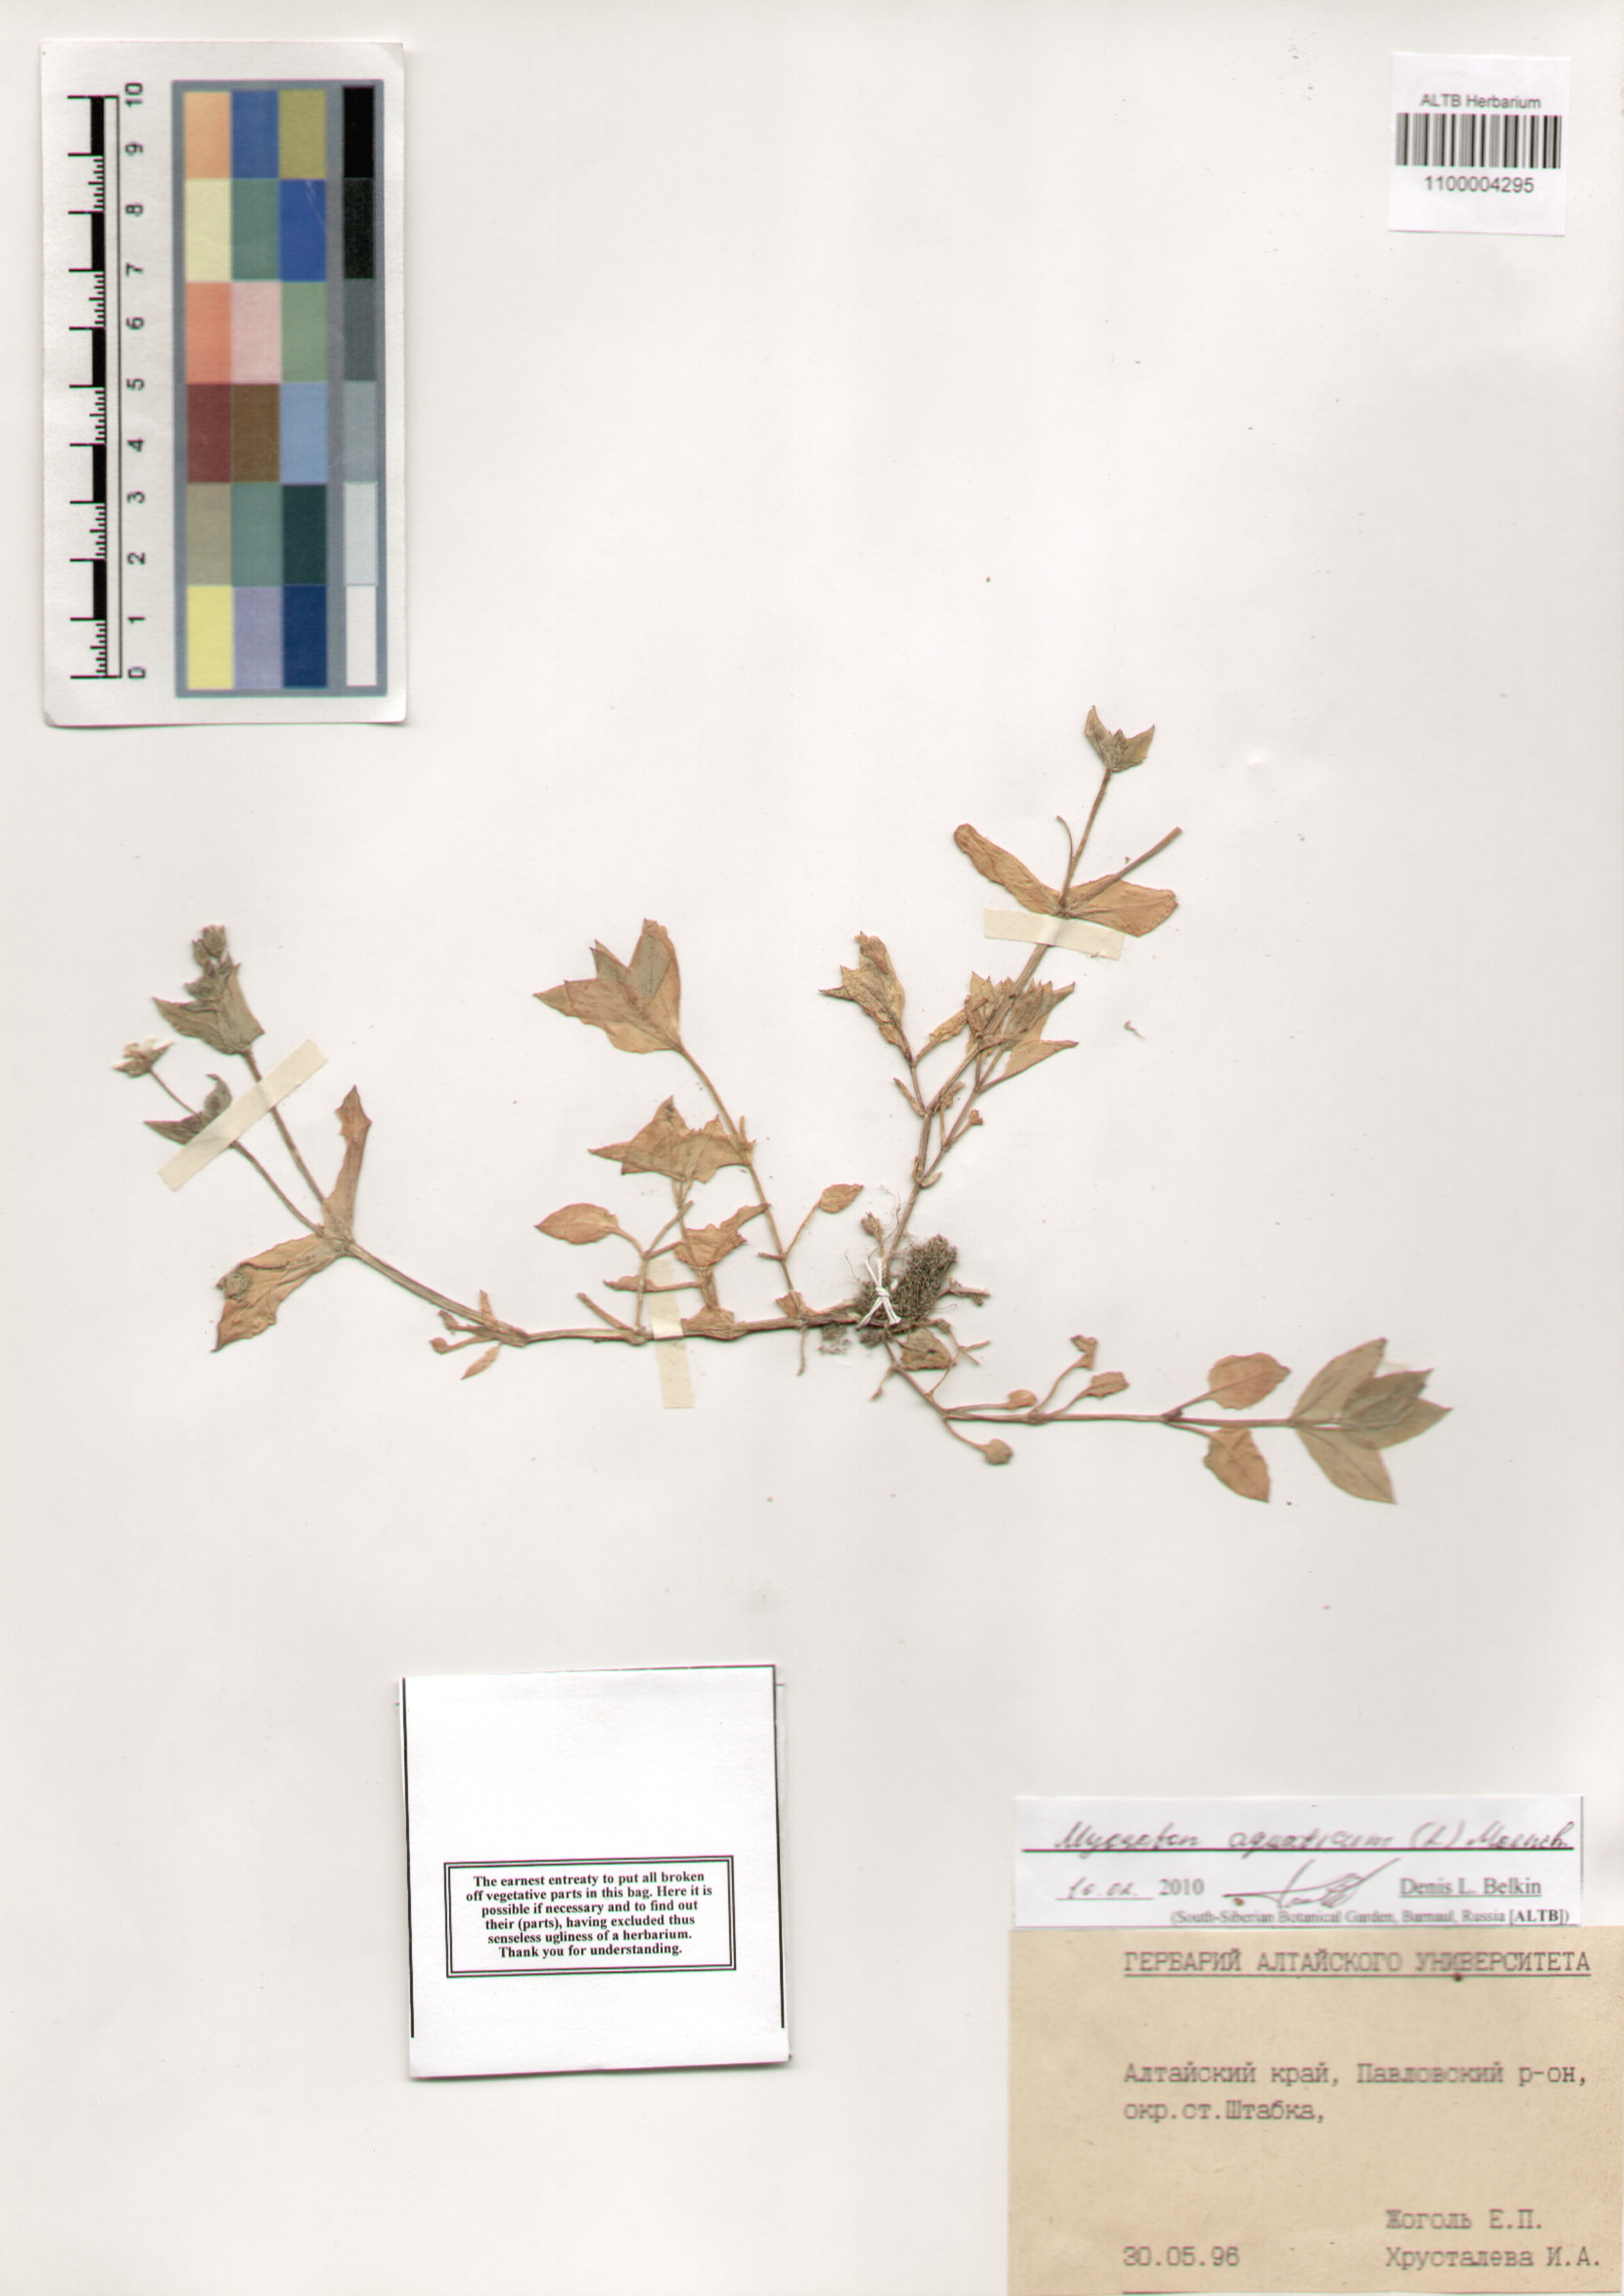 Caryophyllaceae,Myosoton aquaticum (L.) Moench